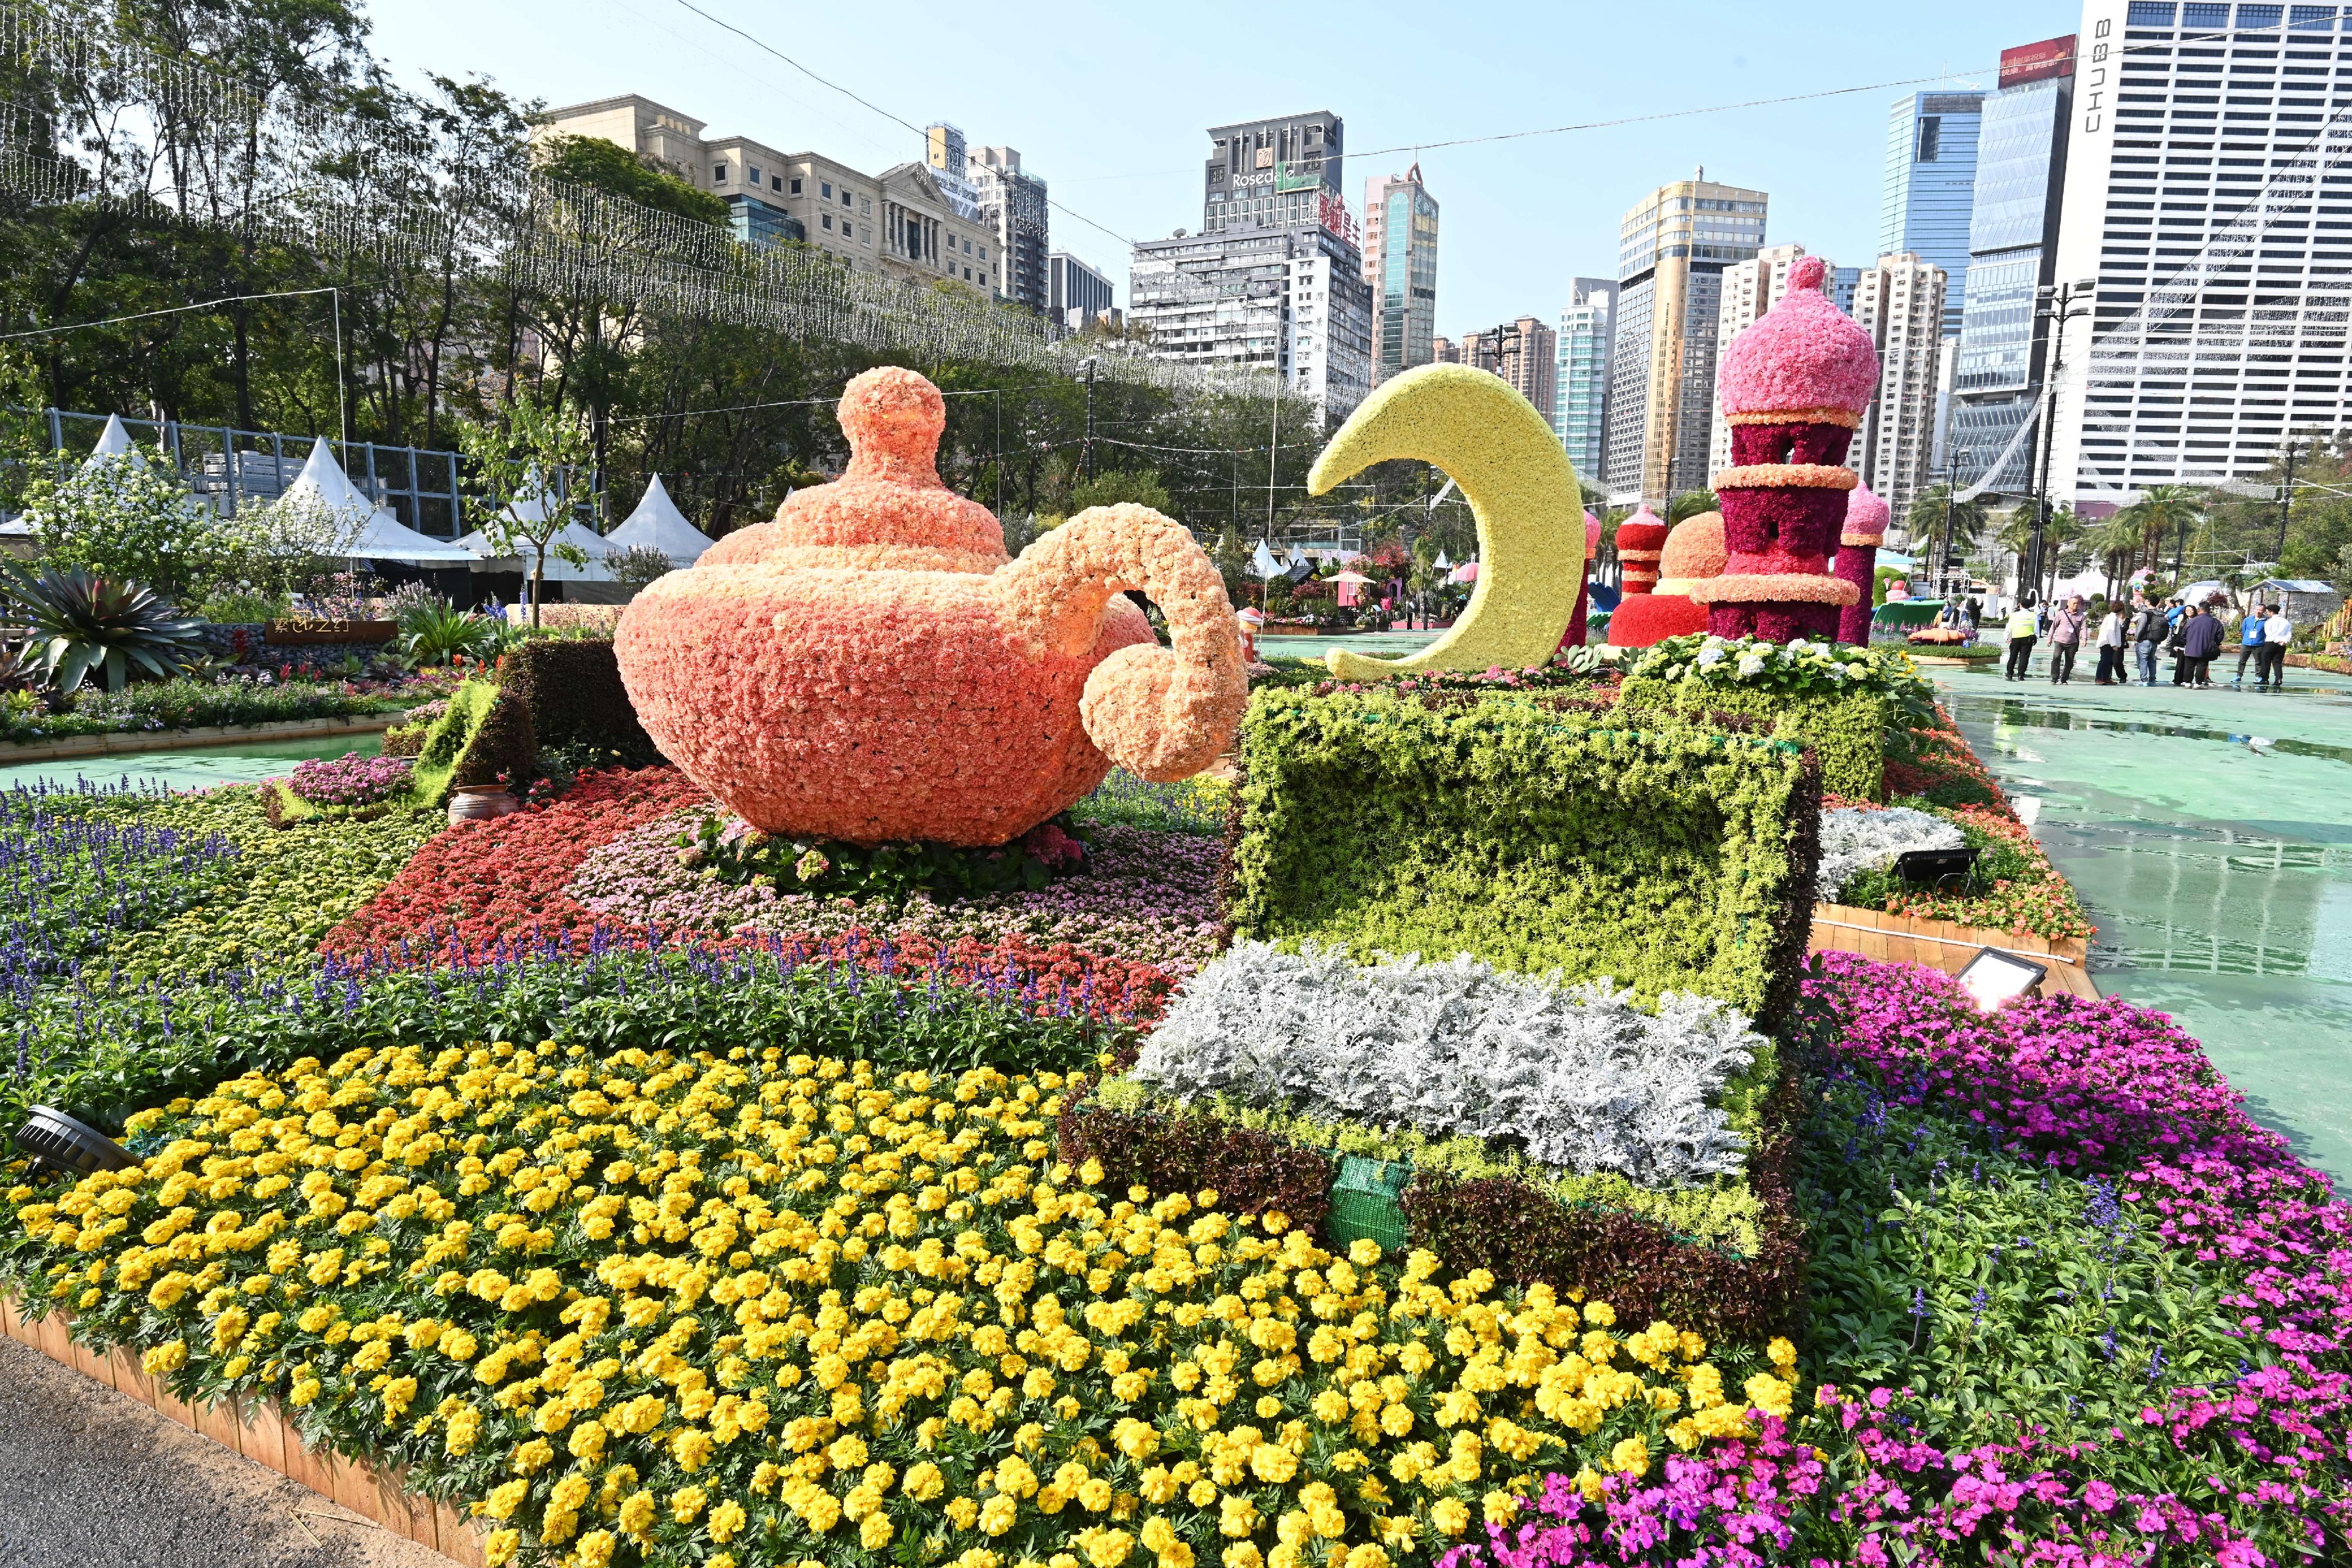 二○二四年香港花卉展览（花展）明日（三月十五日）至三月二十四日在维多利亚公园举行。今年花展的主题花是香彩雀，以「雀跃全城」为主题。花展会场中轴线的园林造景以童话故事为主题，充满童趣和梦幻气息。图示题为《阿拉伯神话》的园林造景。